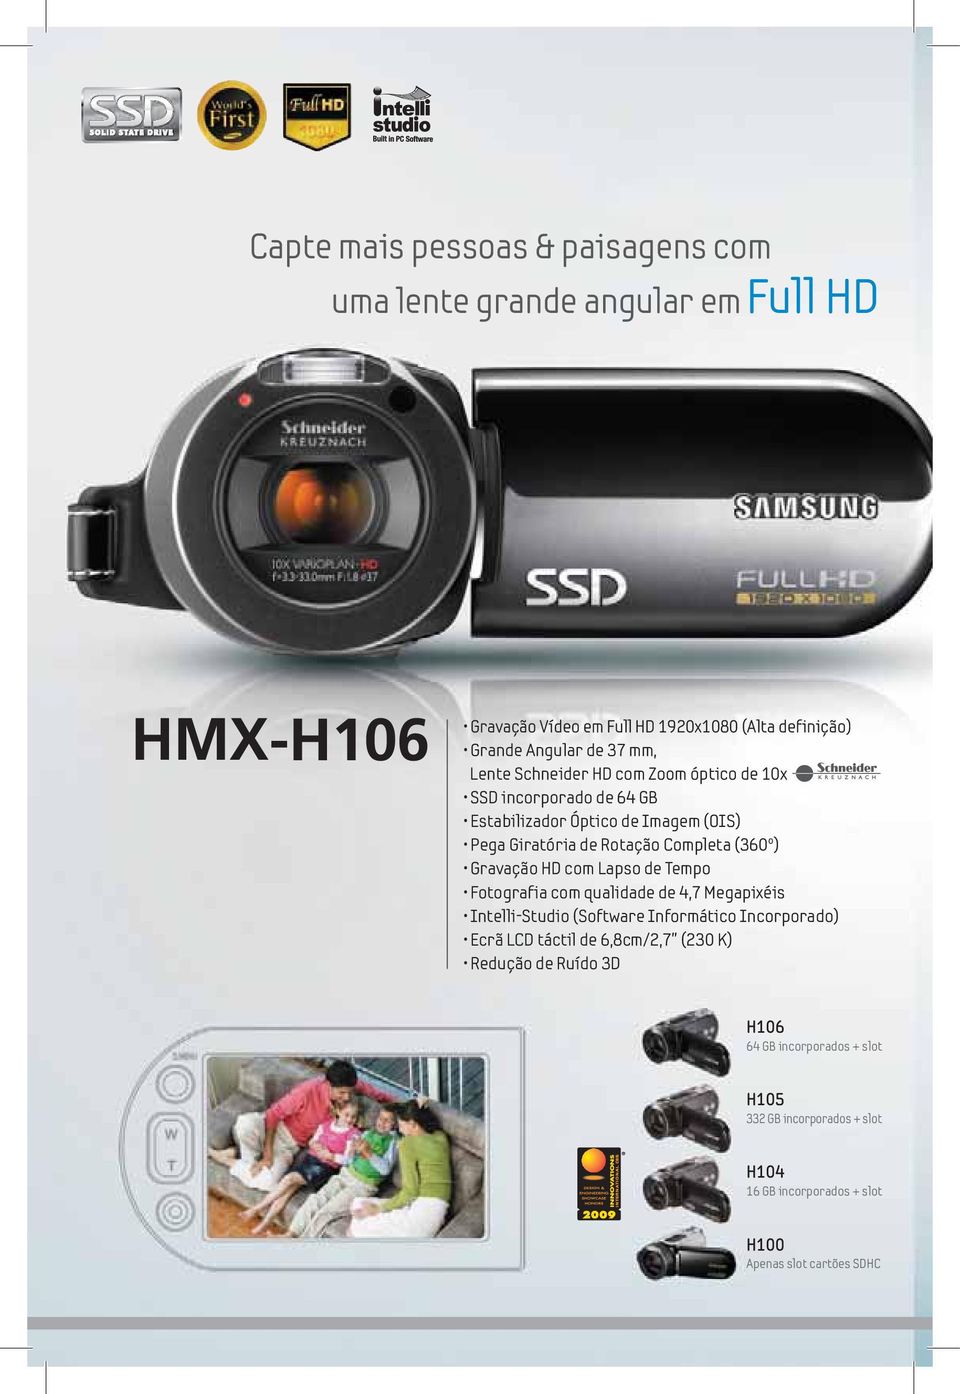 Gravação HD com Lapso de Tempo Fotografia com qualidade de 4,7 Megapixéis Intelli-Studio (Software Informático Incorporado) Ecrã LCD táctil de